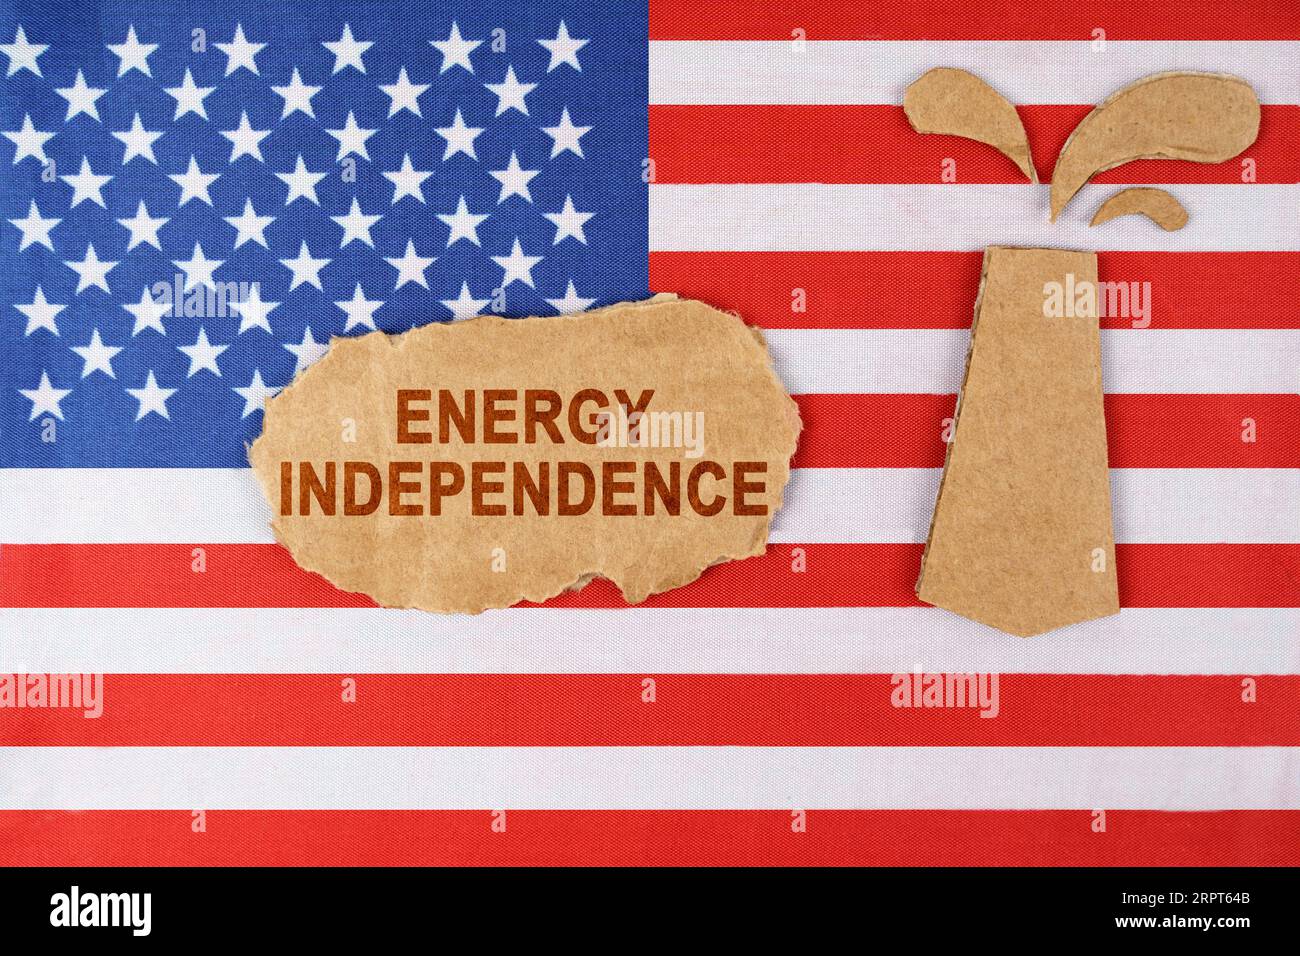 Sulla bandiera degli Stati Uniti c'è una piattaforma petrolifera tagliata in cartone e un cartello con l'iscrizione "indipendenza energetica". Foto Stock